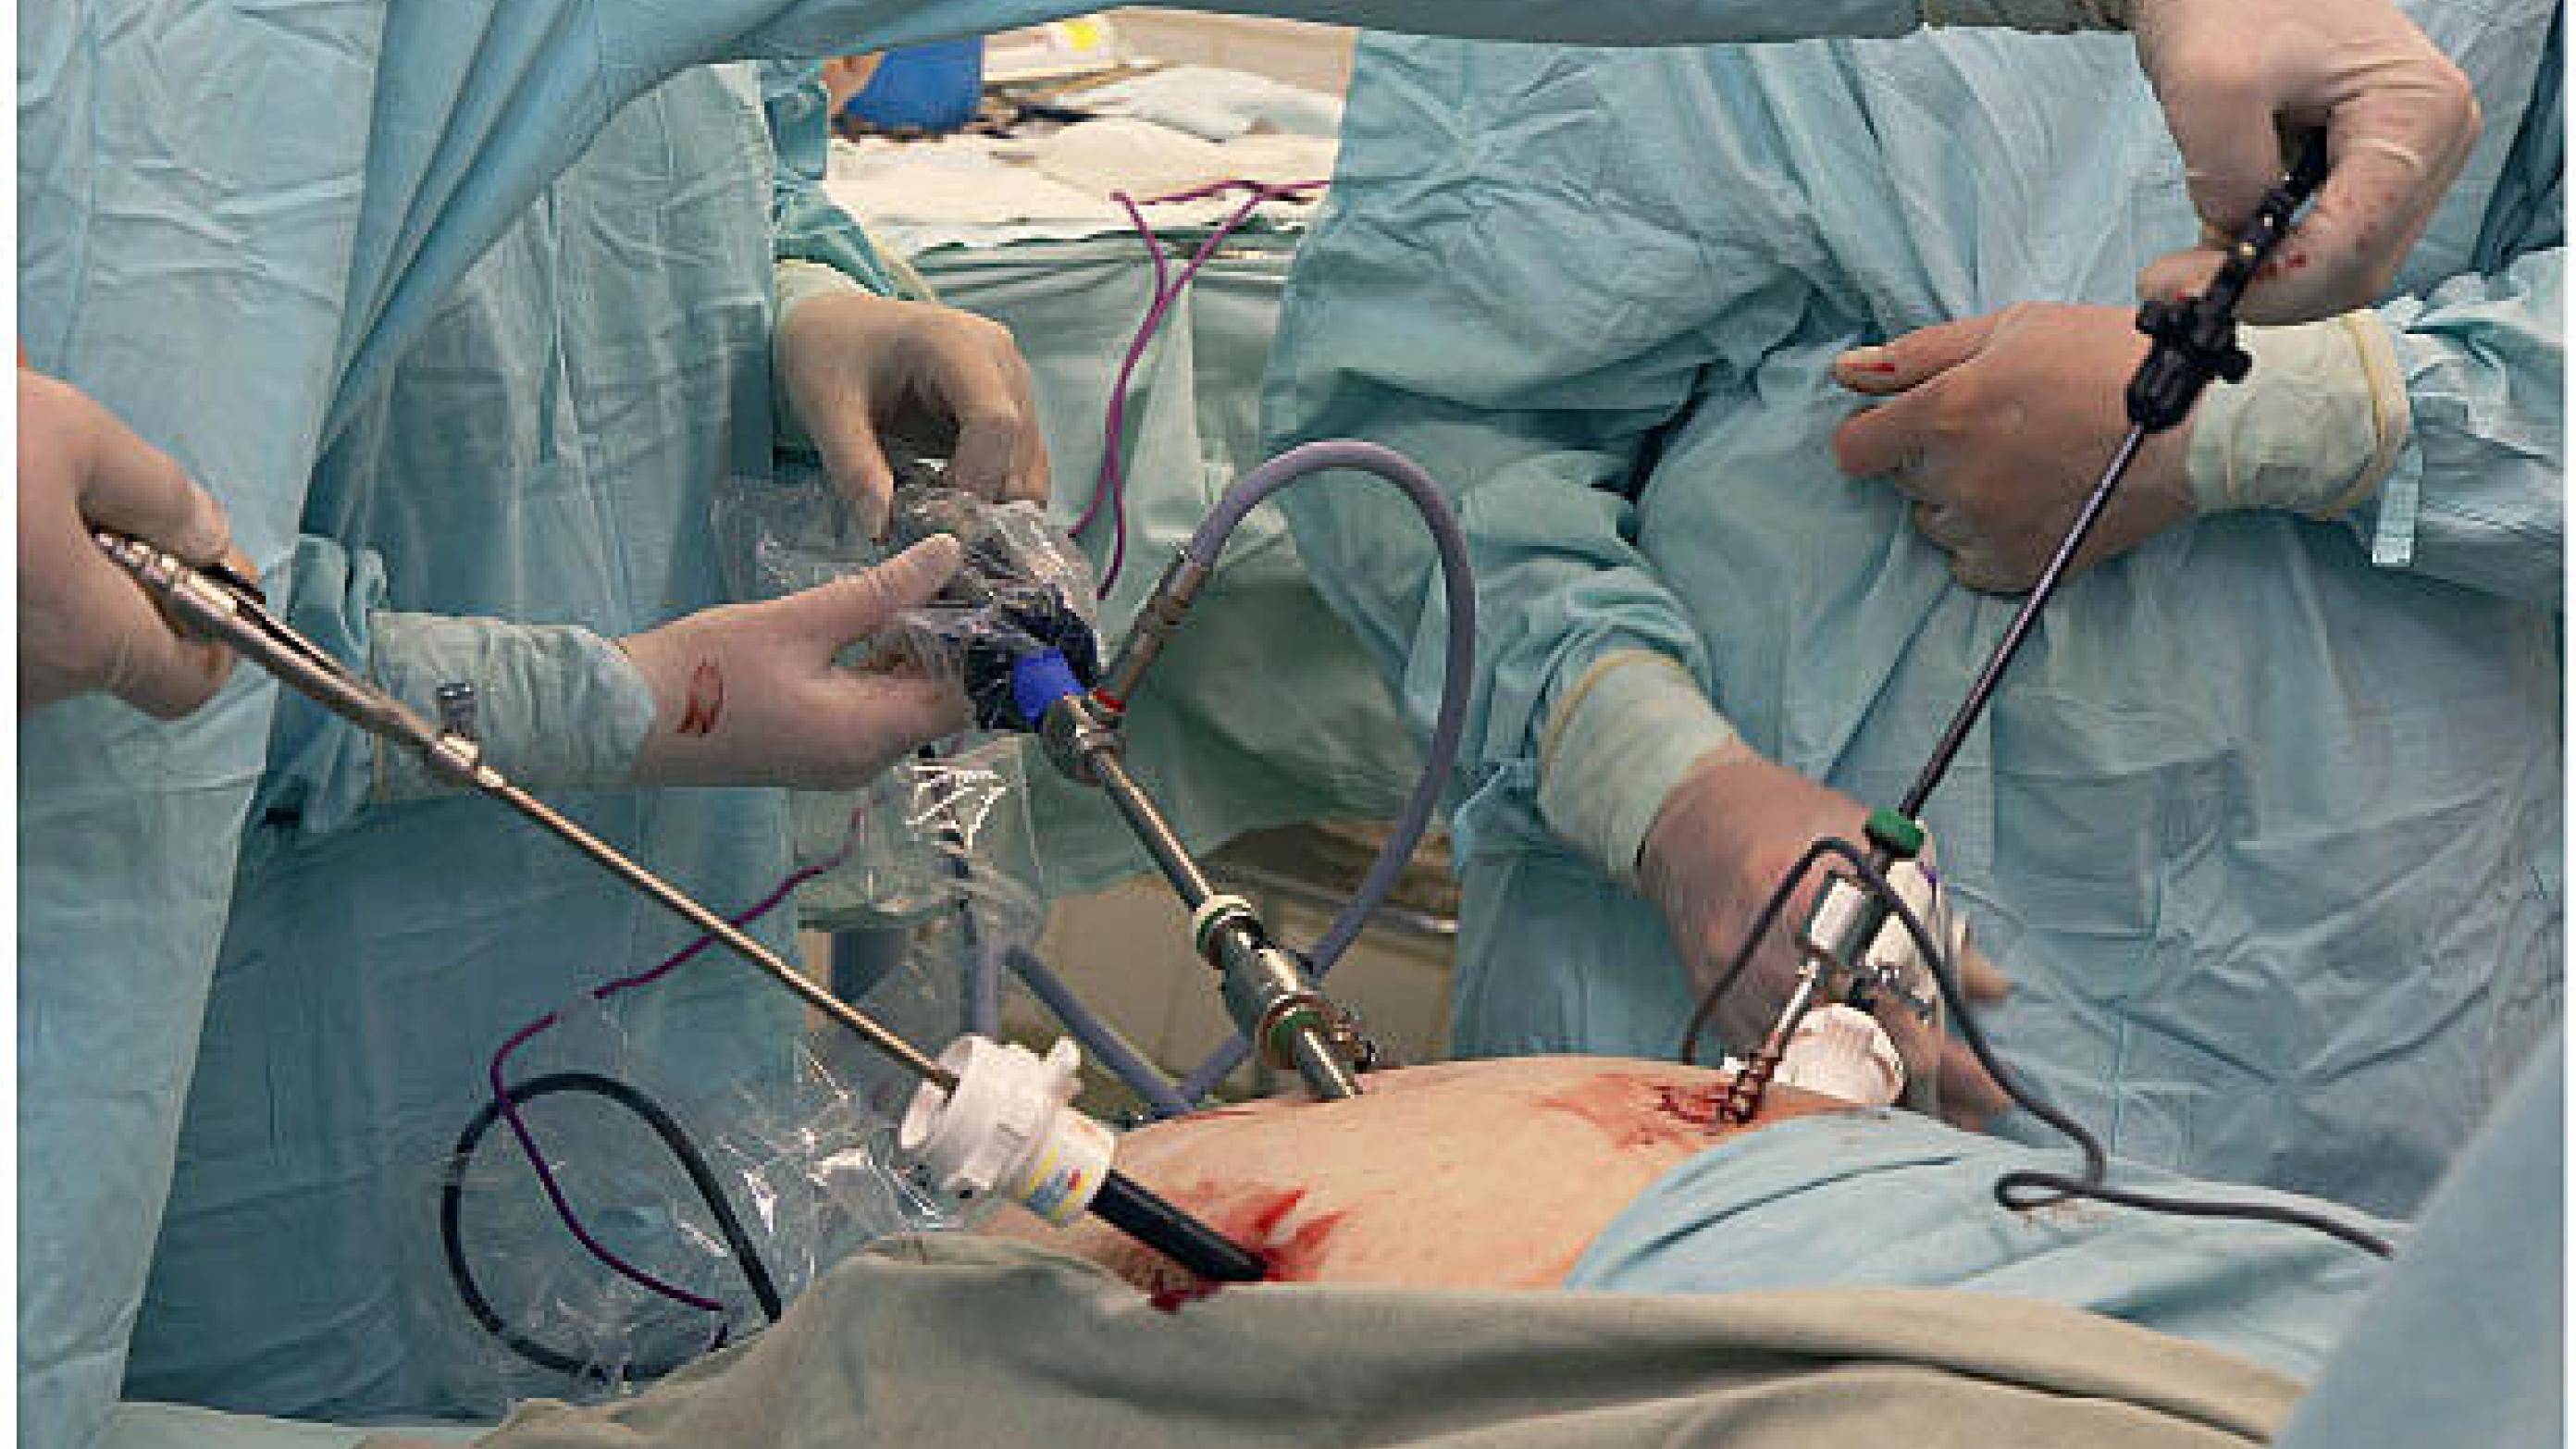 Operationsopstilling ved laparoskopisk ­kirurgi.